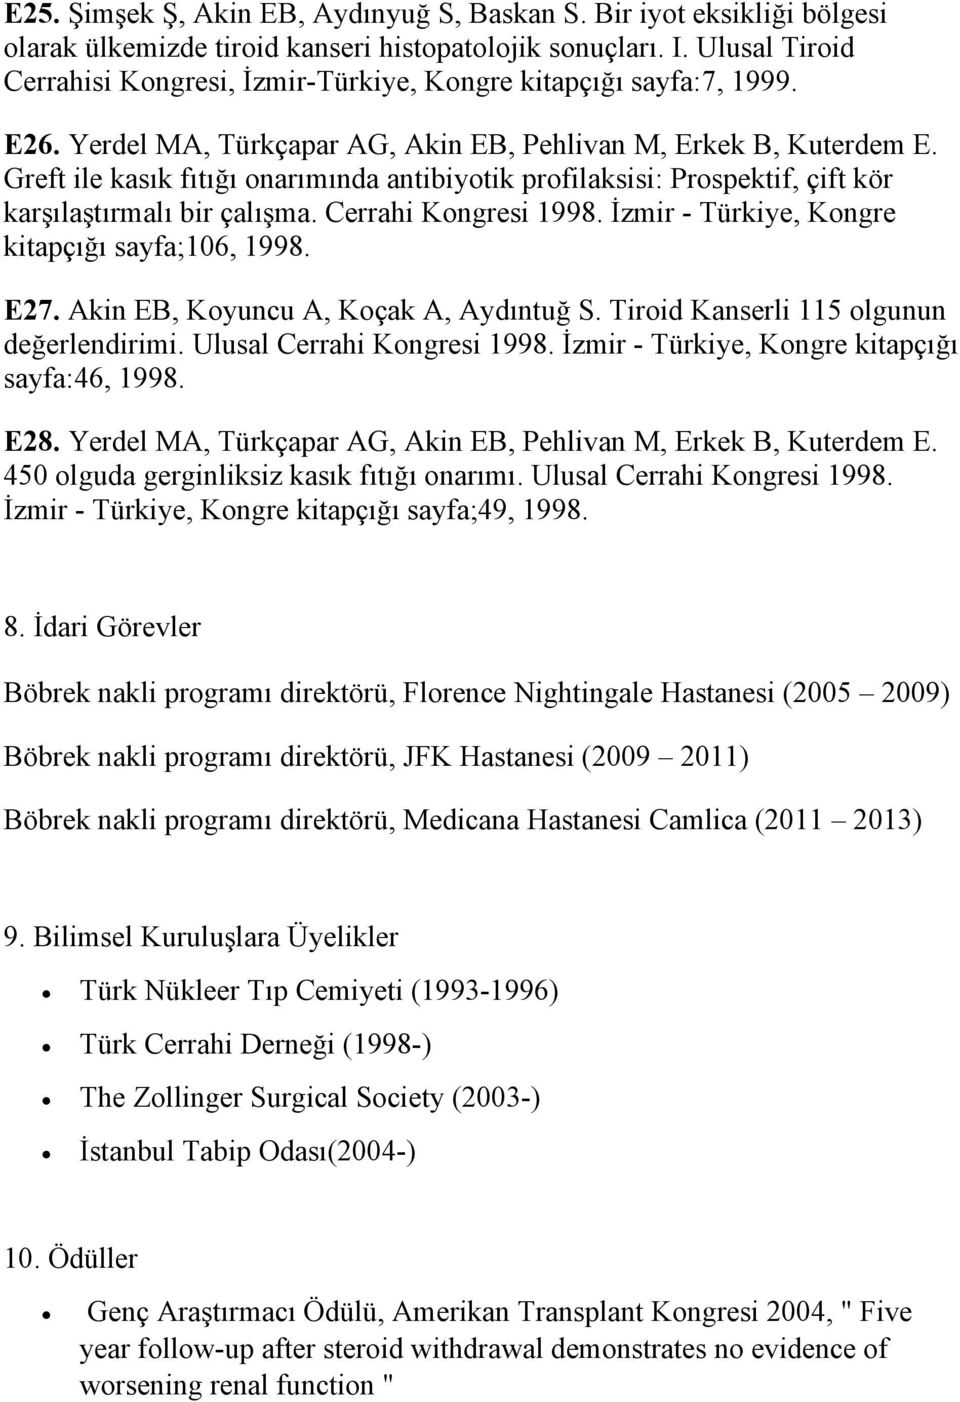 Greft ile kasık fıtığı onarımında antibiyotik profilaksisi: Prospektif, çift kör karşılaştırmalı bir çalışma. Cerrahi Kongresi 1998. İzmir - Türkiye, Kongre kitapçığı sayfa;106, 1998. E27.